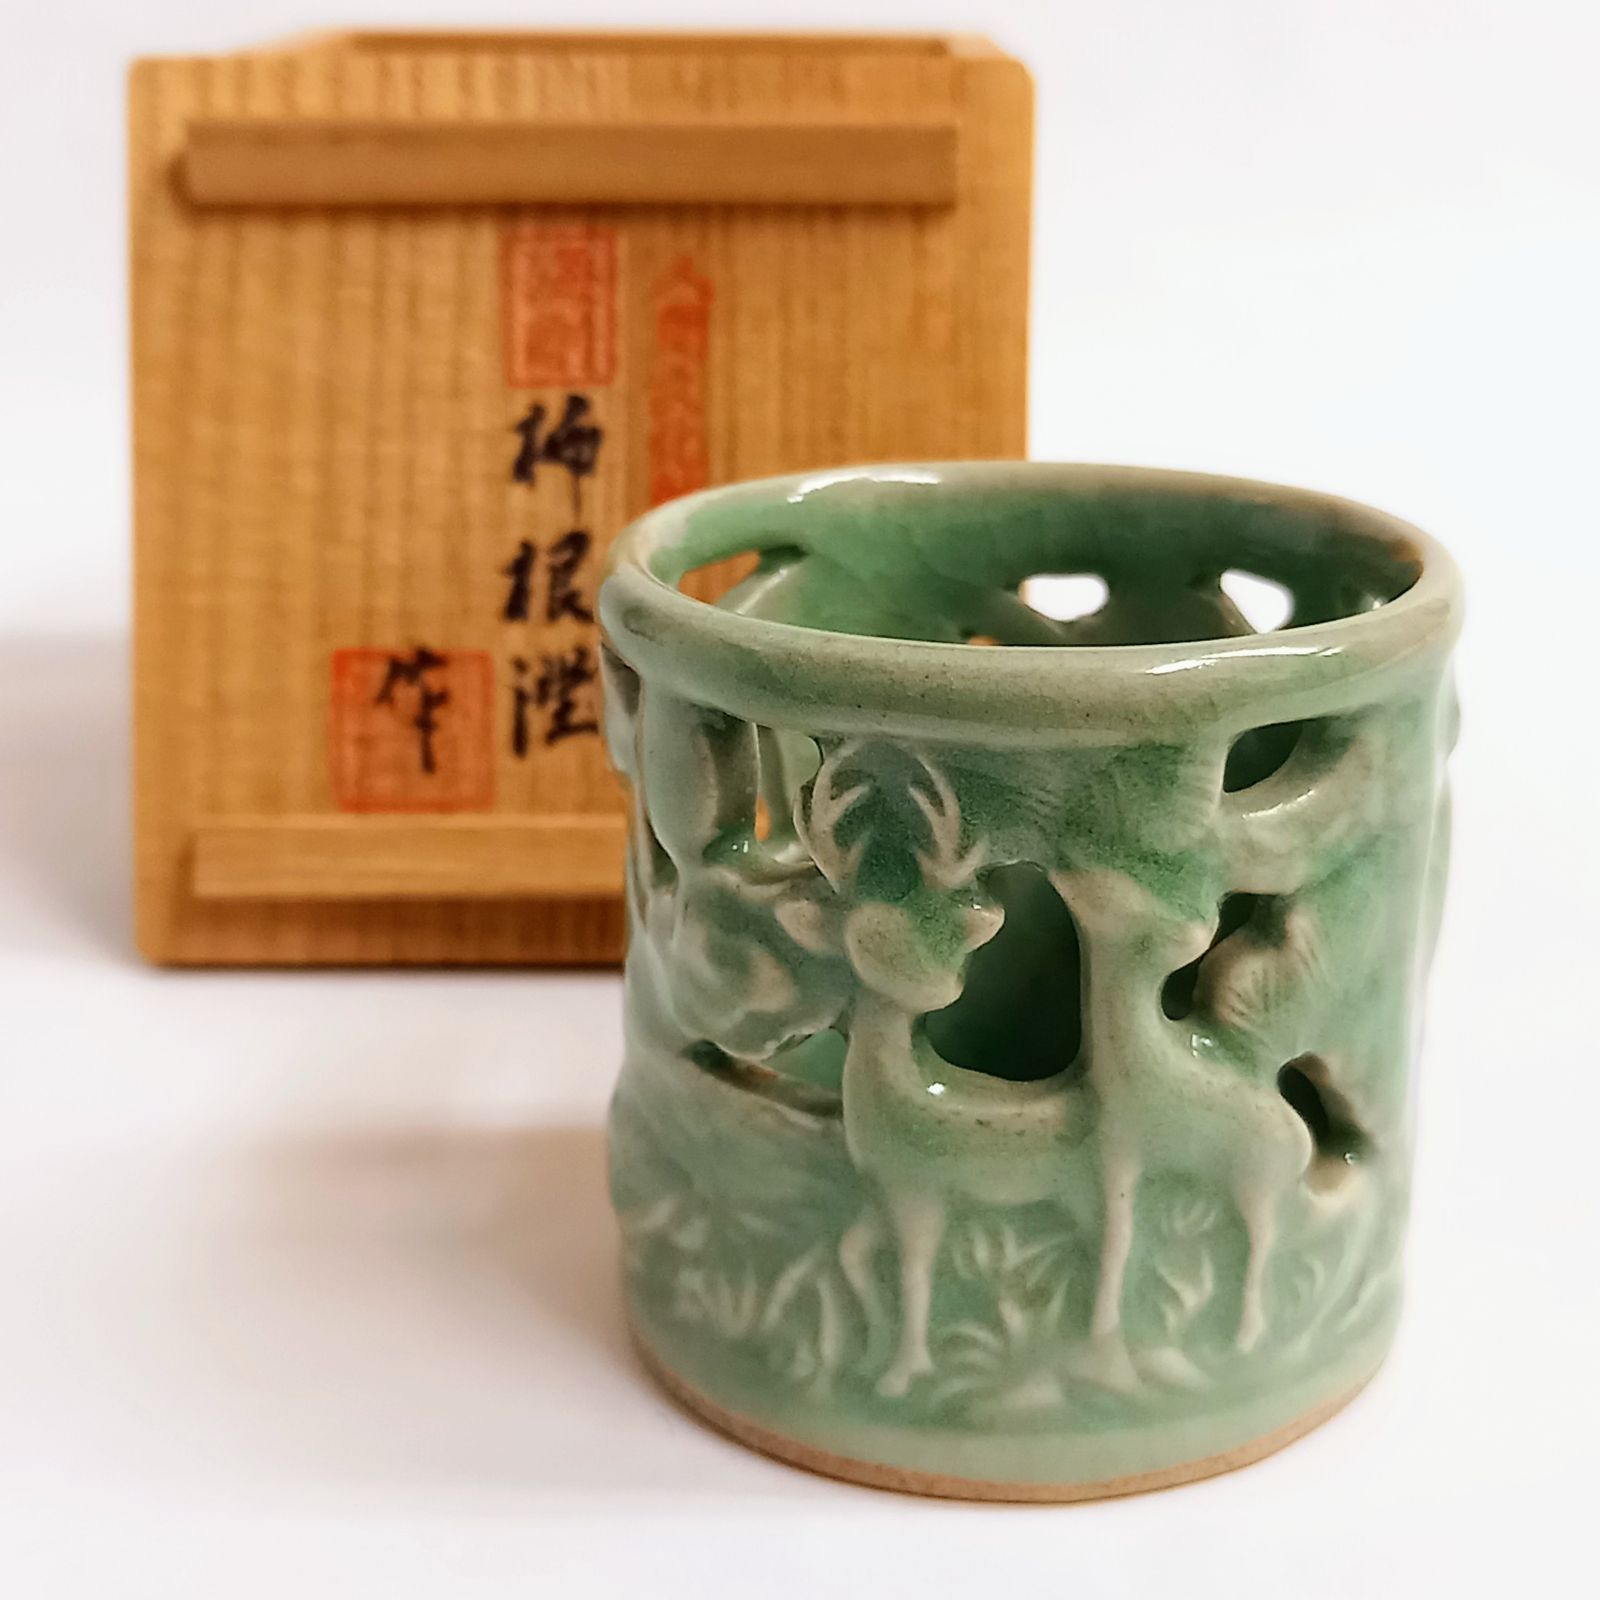 e1382 柳海剛 共箱 高麗青磁茶碗 柳根瀅 韓国人間文化財 茶道具